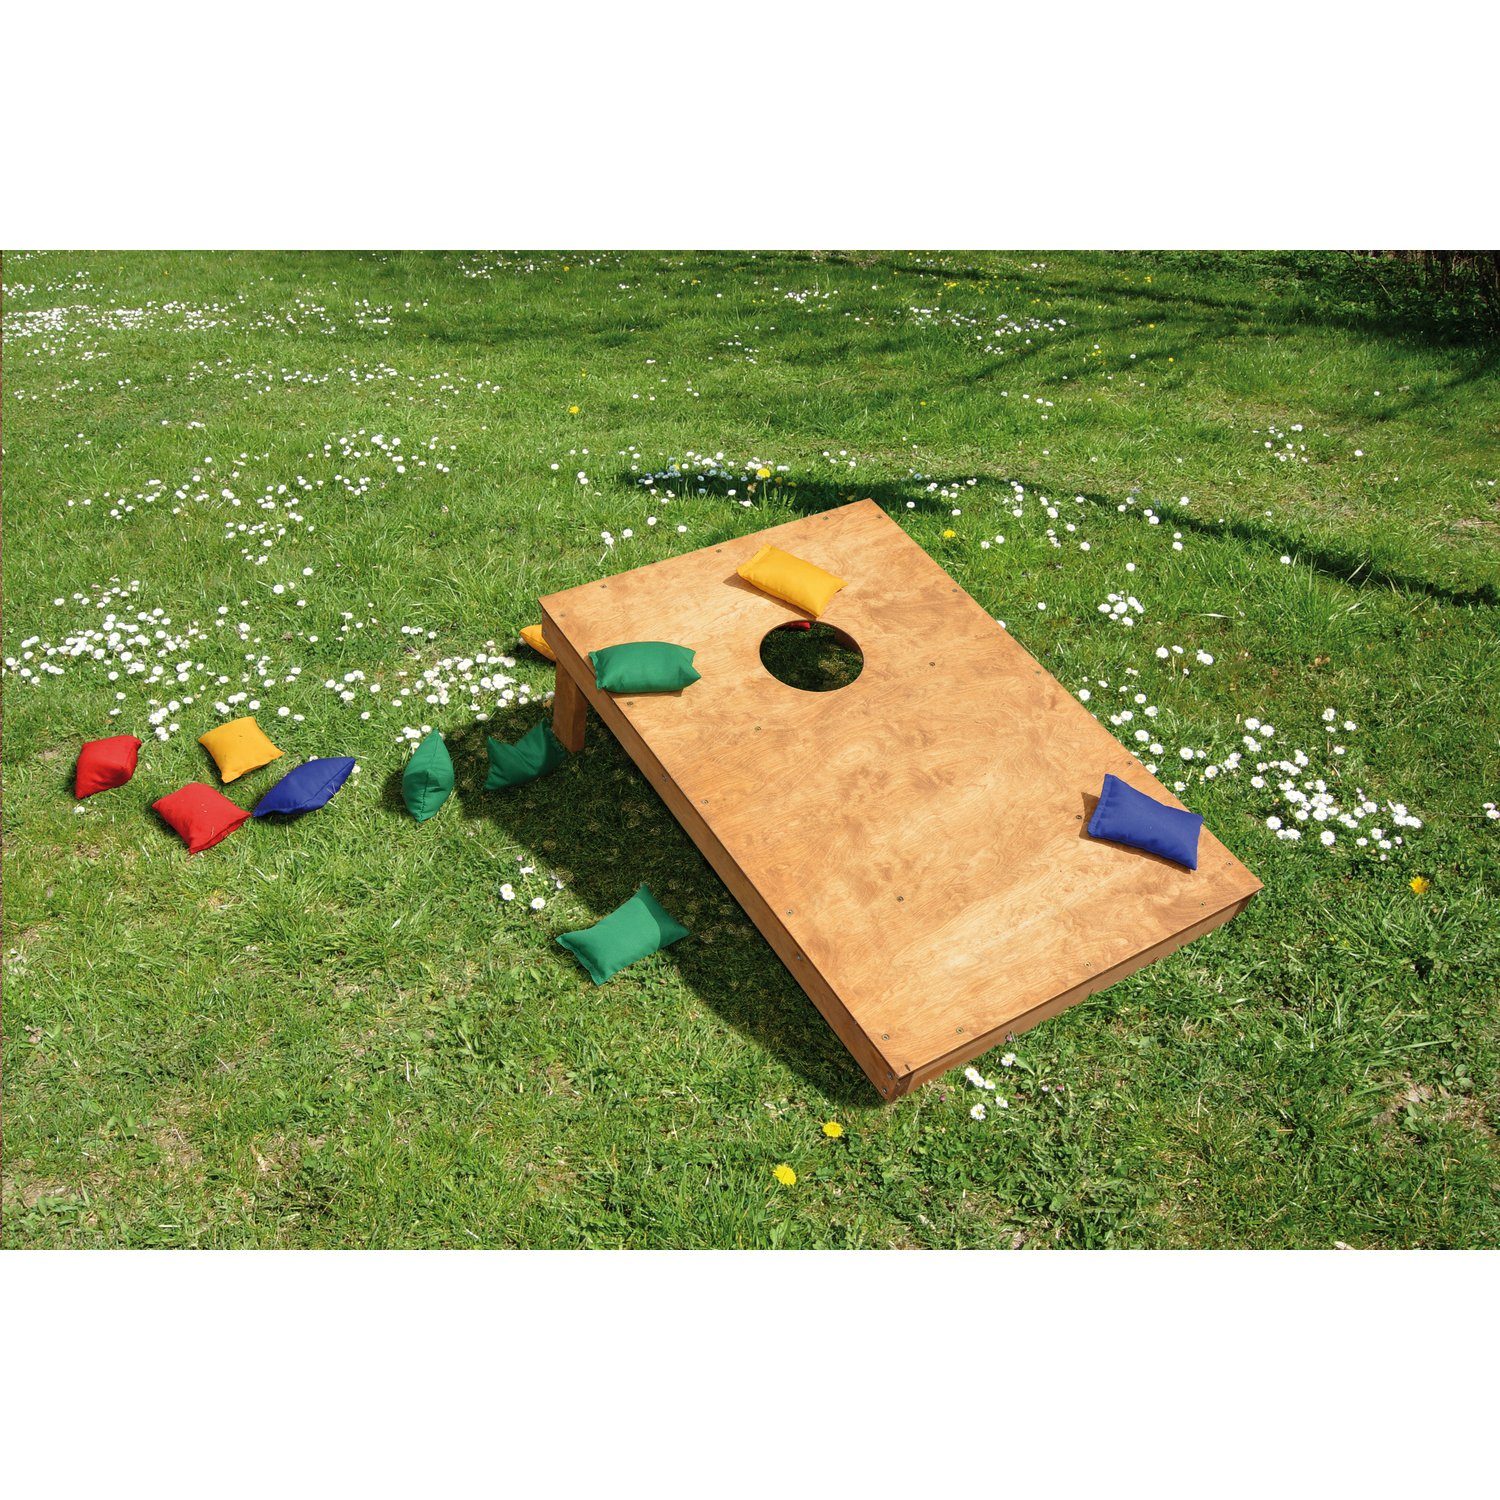 EDUPLAY Spielzeug-Gartenset Bohnensäckchen Zielwurfspiel